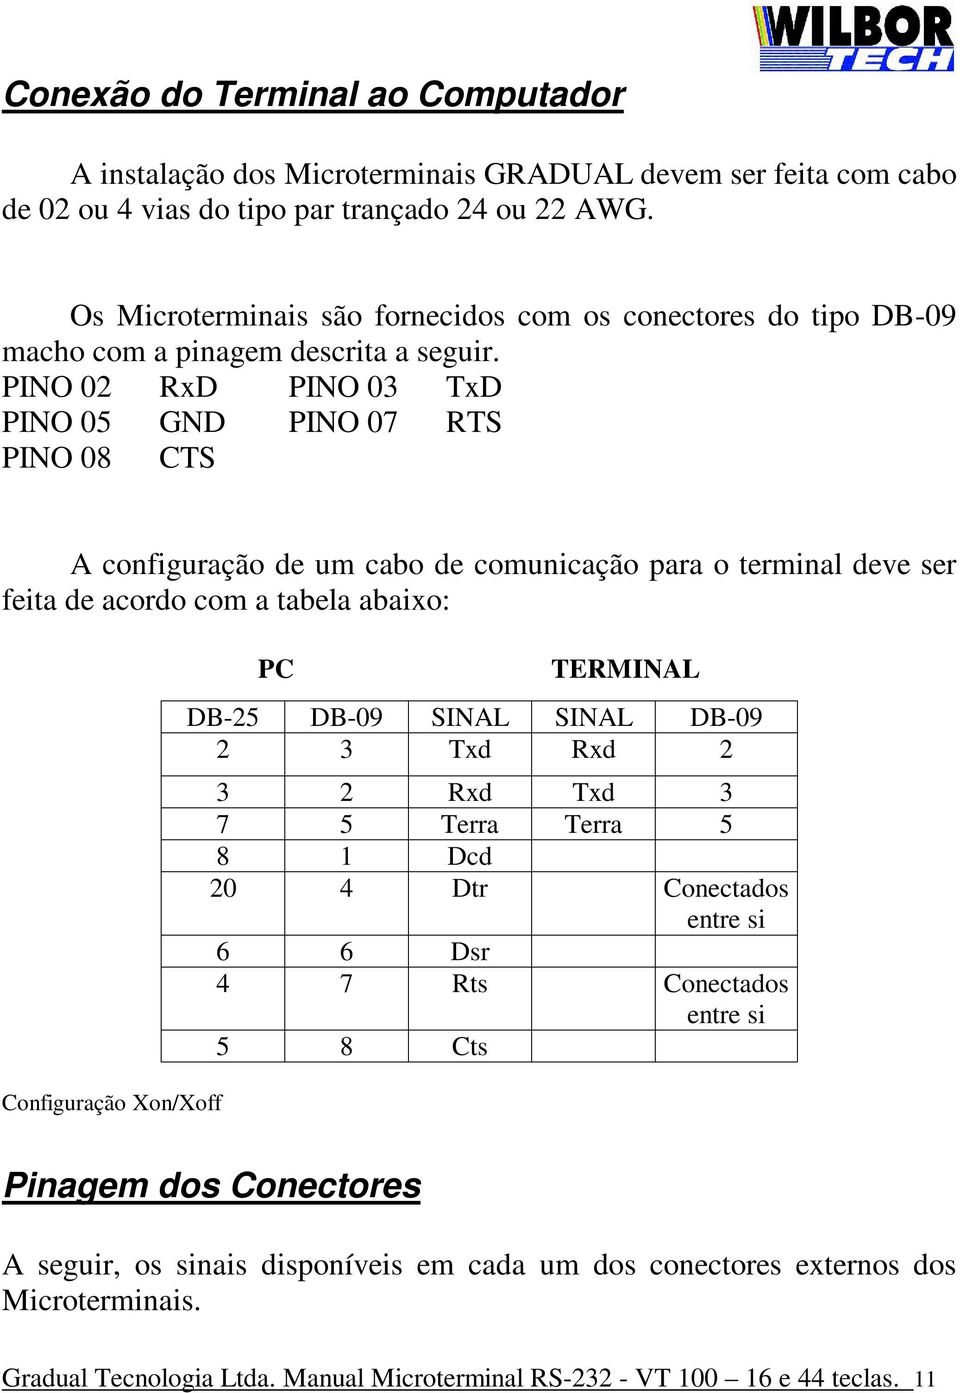 PINO 02 RxD PINO 03 TxD PINO 05 GND PINO 07 RTS PINO 08 CTS A configuração de um cabo de comunicação para o terminal deve ser feita de acordo com a tabela abaixo: Configuração Xon/Xoff PC TERMINAL